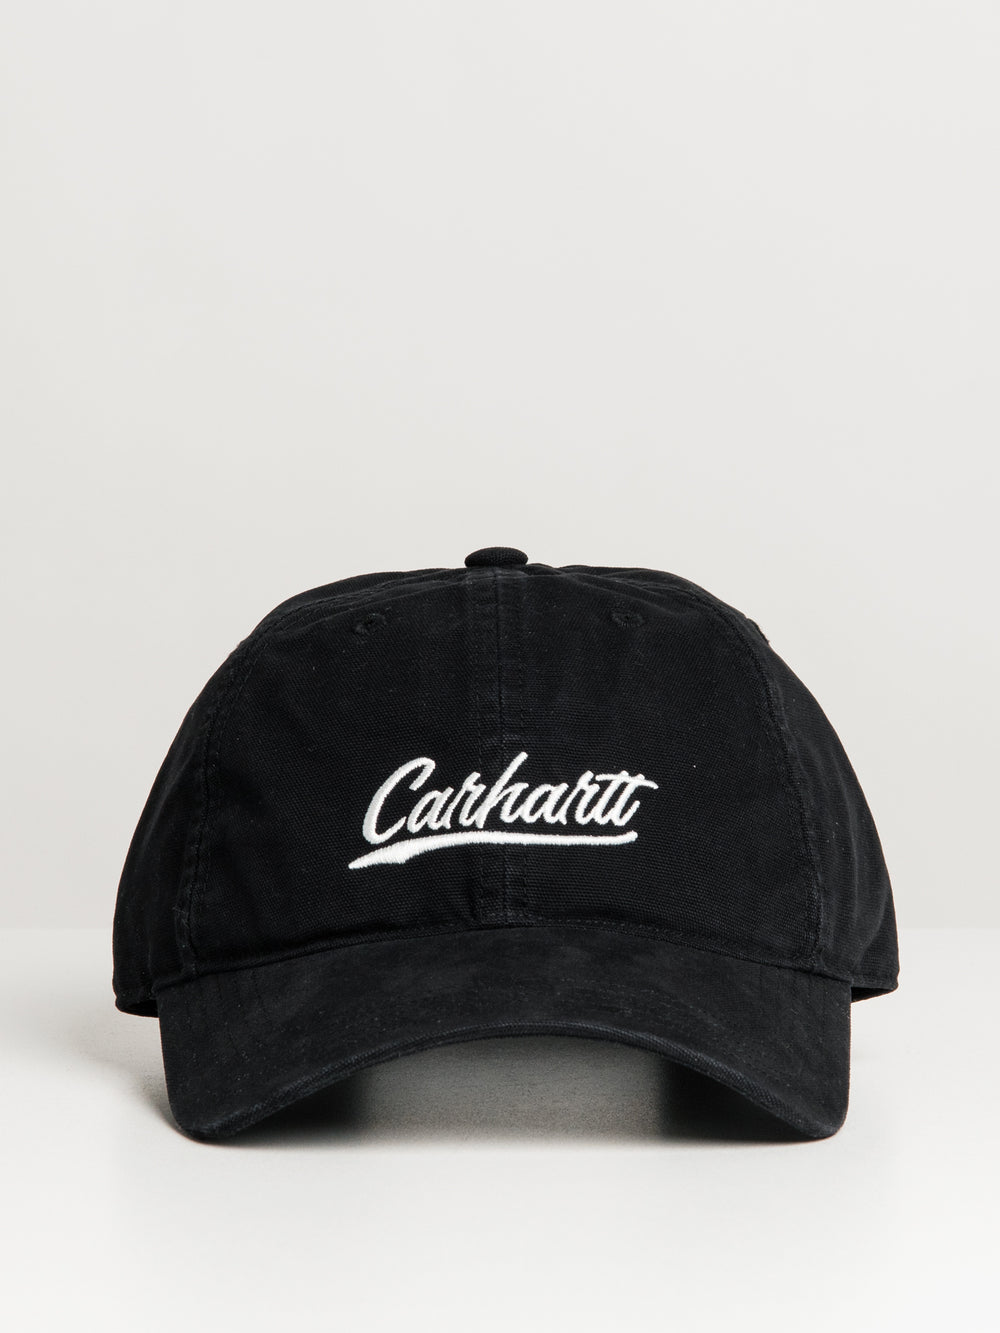 CARHARTT CANVAS SCRIPT CAP - BLACK